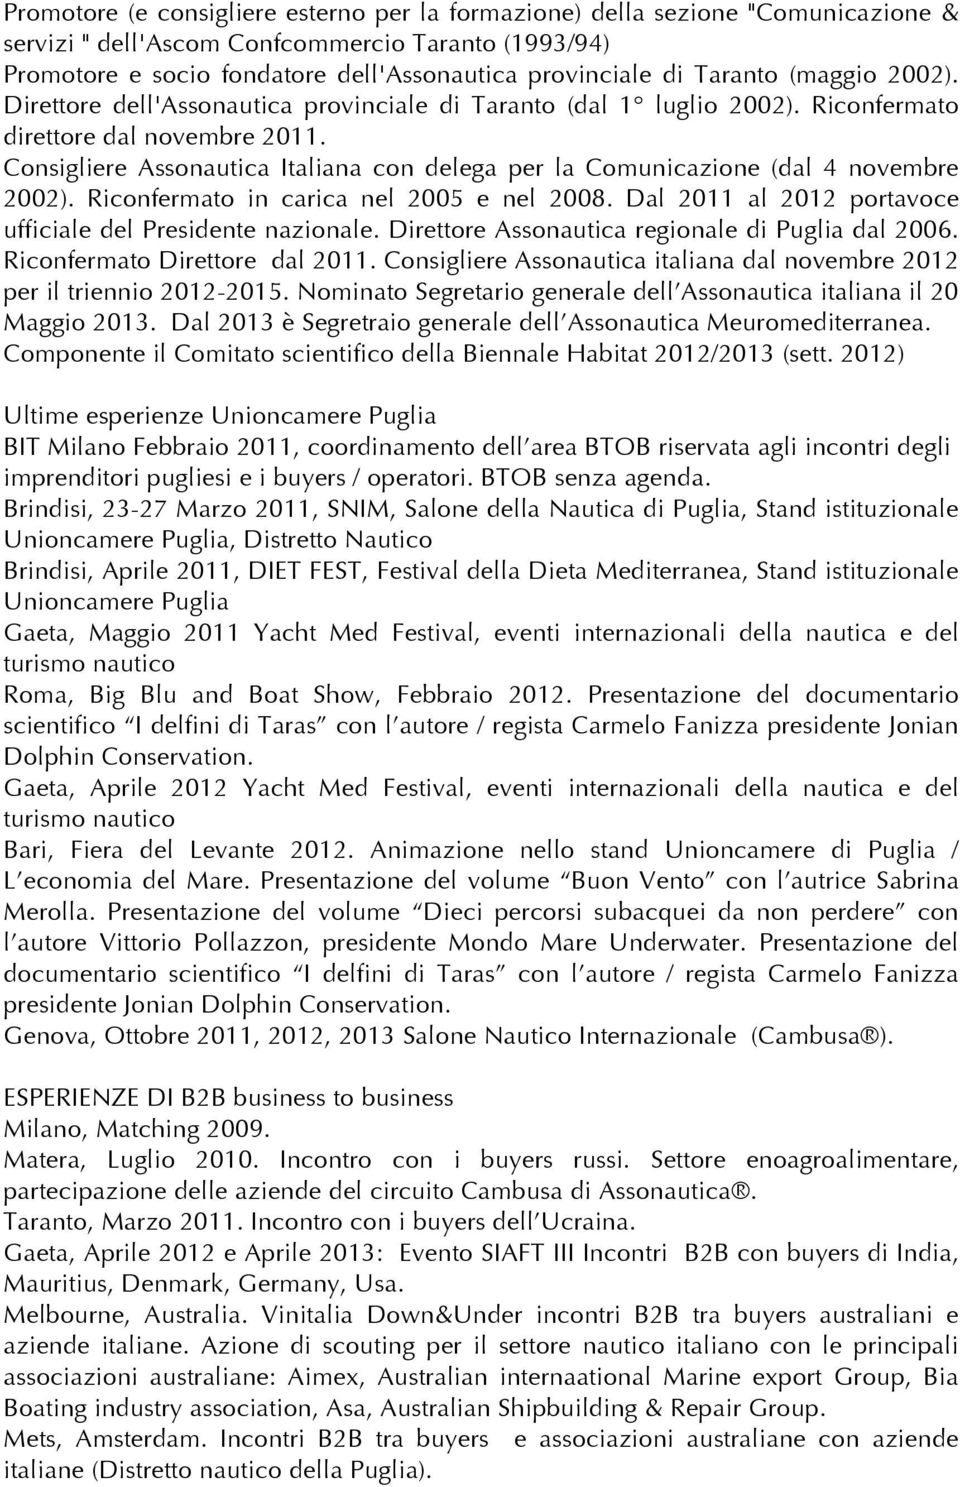 Consigliere Assonautica Italiana con delega per la Comunicazione (dal 4 novembre 2002). Riconfermato in carica nel 2005 e nel 2008. Dal 2011 al 2012 portavoce ufficiale del Presidente nazionale.